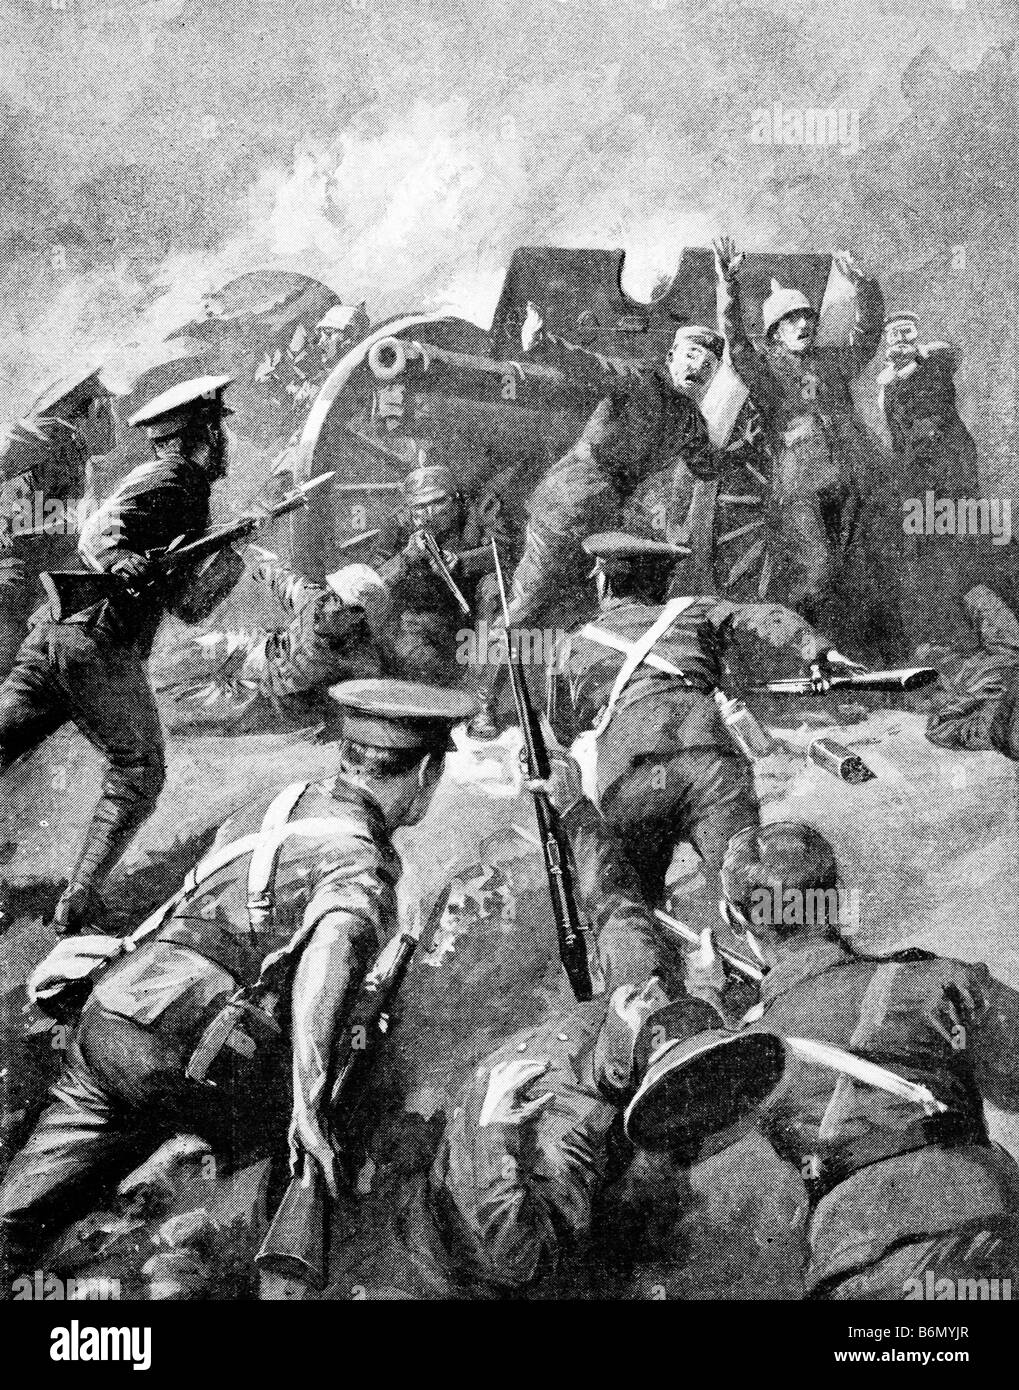 Ersten Weltkrieg zeitgenössische Illustration einer deutschen Artillerie Crew gegen eine Gebühr von alliierten Soldaten übergeben. Stockfoto